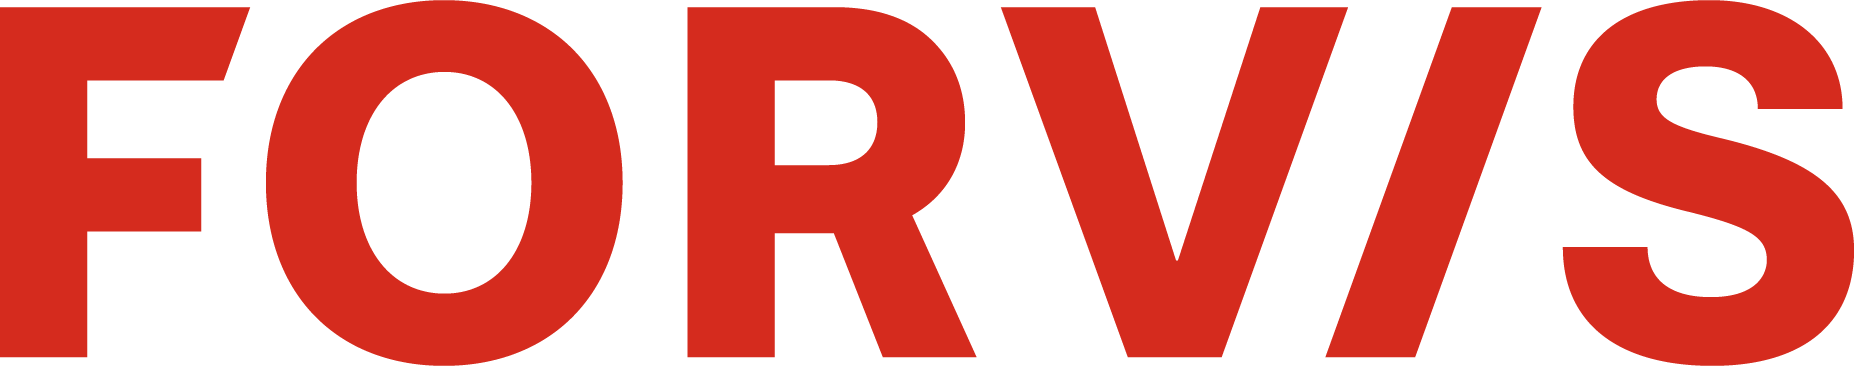 Forward and Vision logo